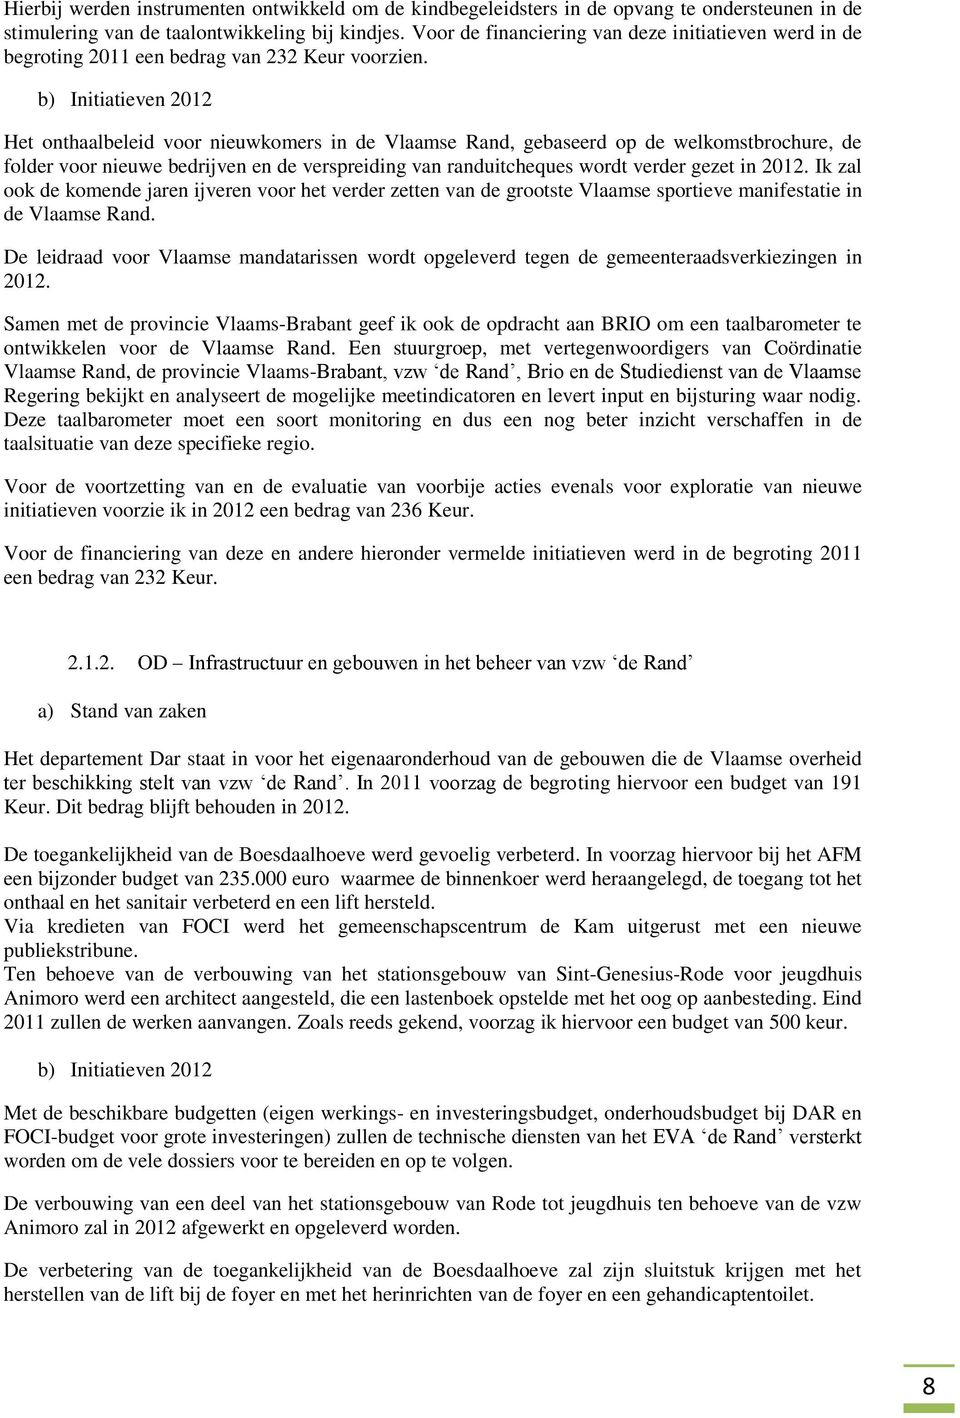 b) Initiatieven 2012 Het onthaalbeleid voor nieuwkomers in de Vlaamse Rand, gebaseerd op de welkomstbrochure, de folder voor nieuwe bedrijven en de verspreiding van randuitcheques wordt verder gezet